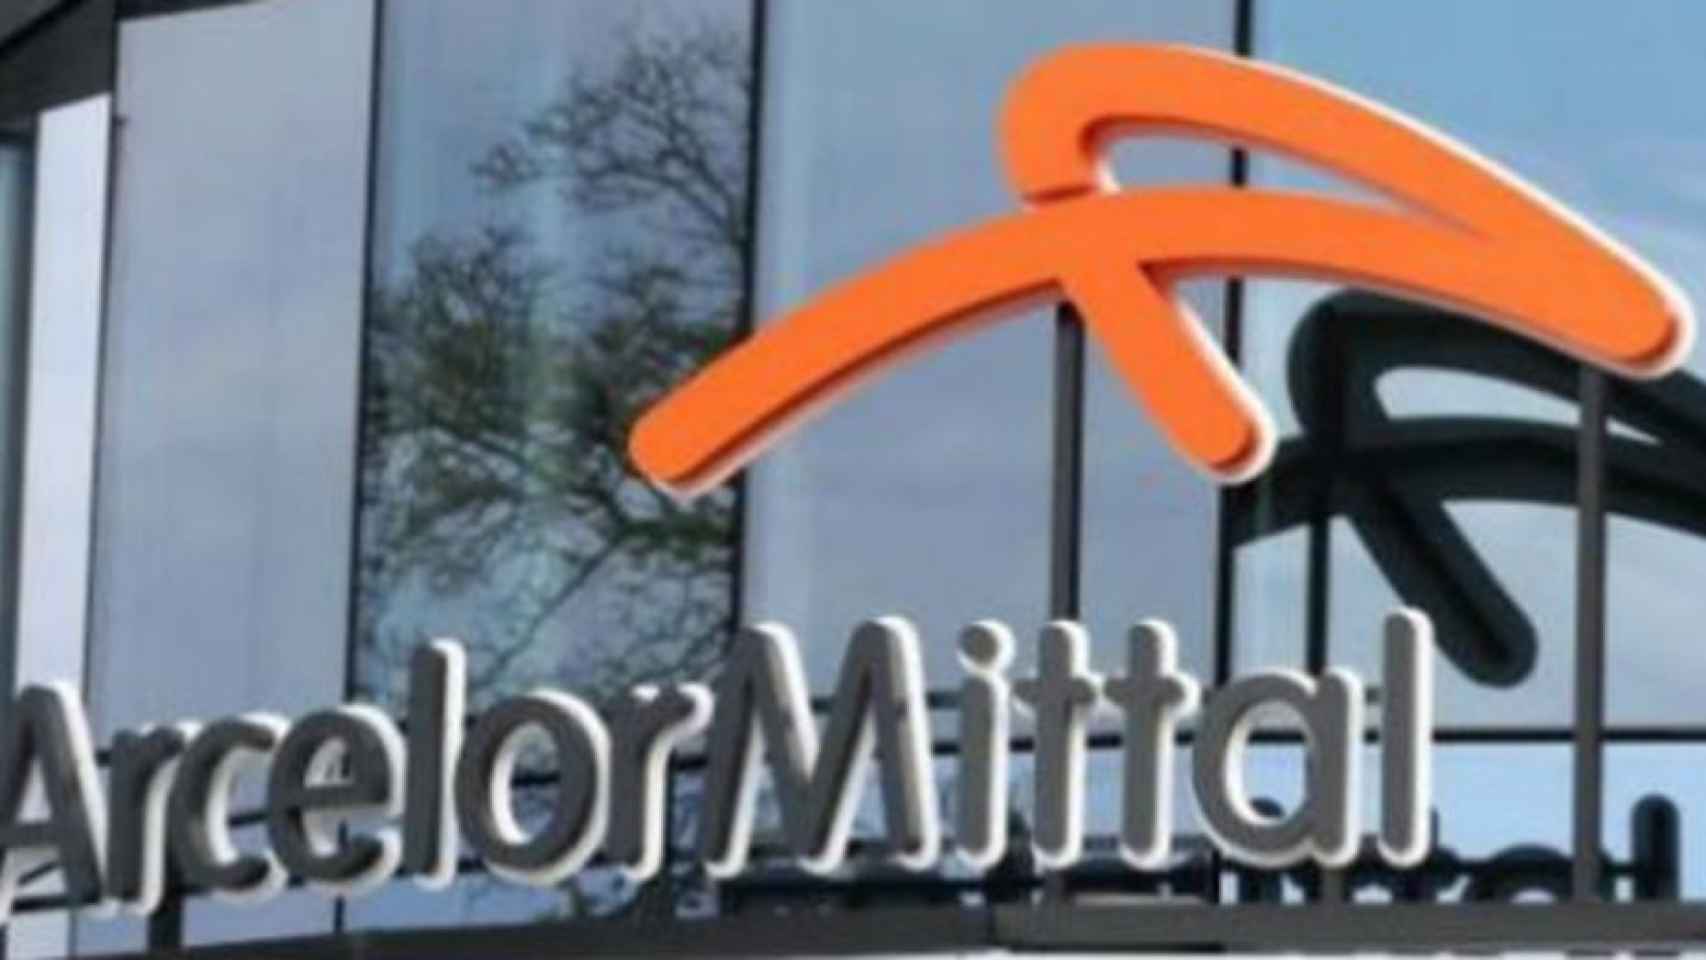 XTB: «ArcelorMittal busca romper la resistencia de los 30,7 euros»